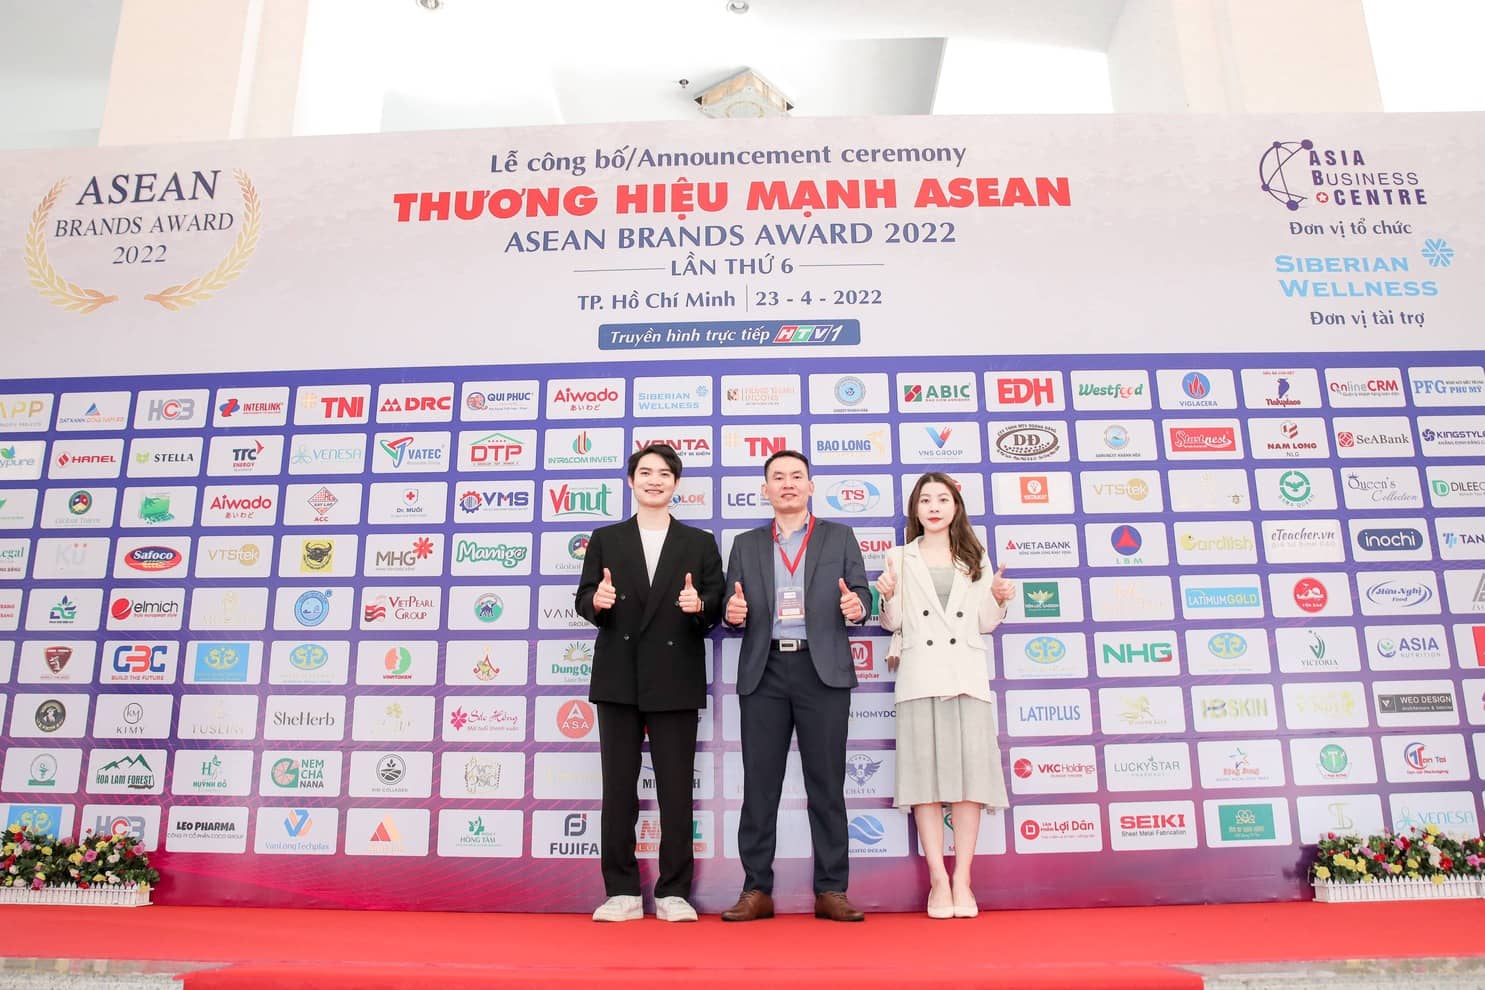 OnlineCRM nhận giải thưởng TOP 10 thương hiệu mạnh ASEAN 2022